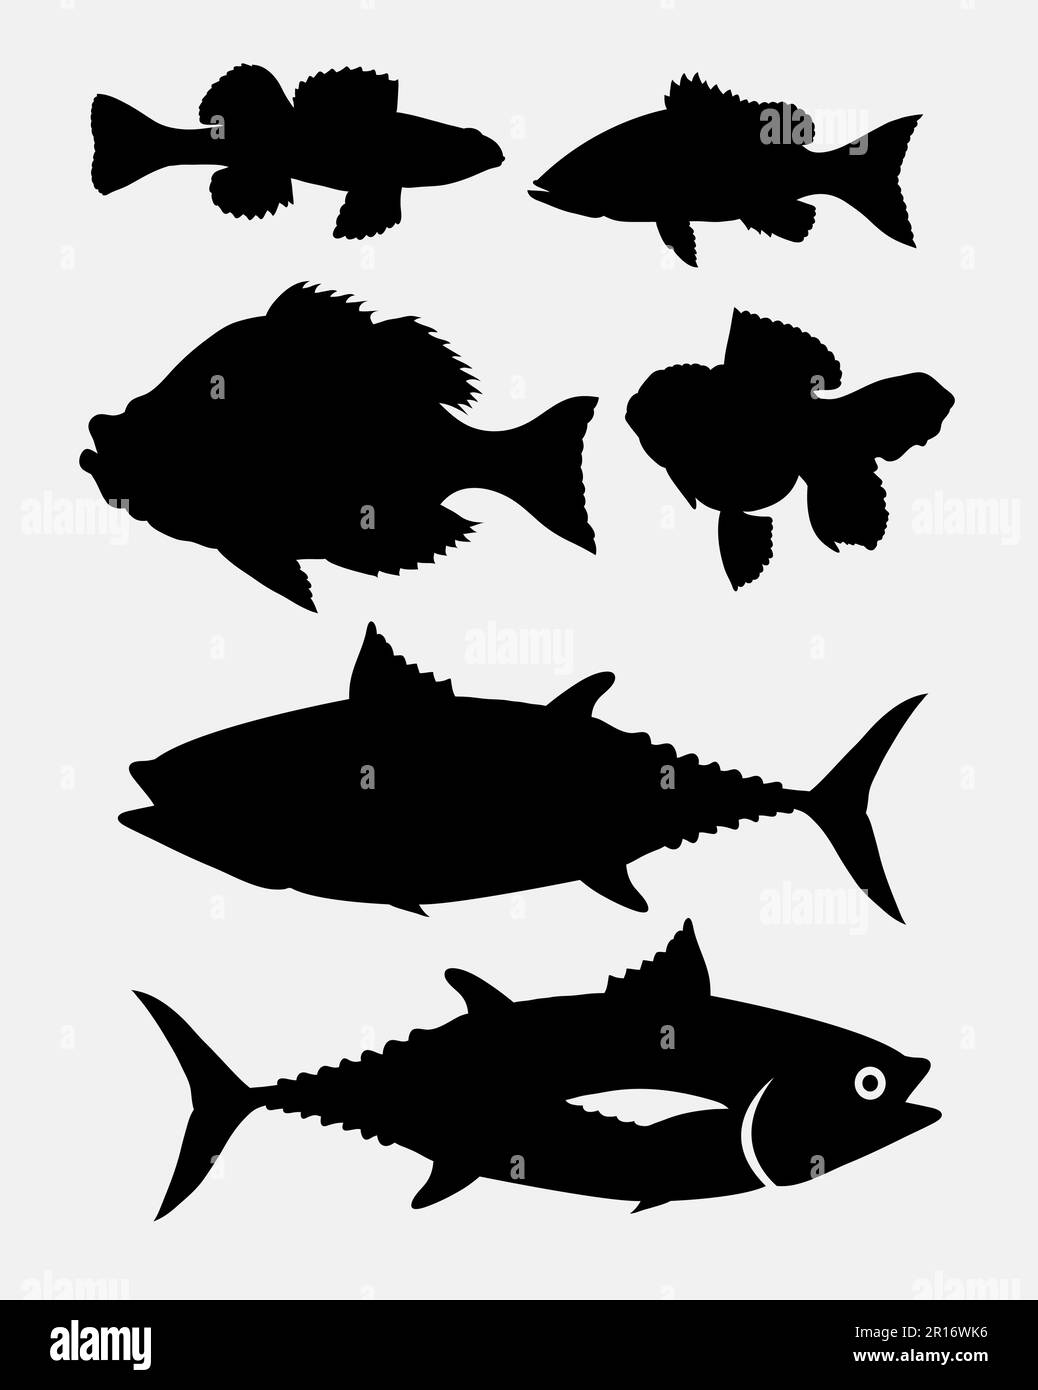 Silhouette d'animal de poisson bon usage pour symbole, logo, icône web, mascotte, signe, ou n'importe quelle conception que vous voulez Illustration de Vecteur